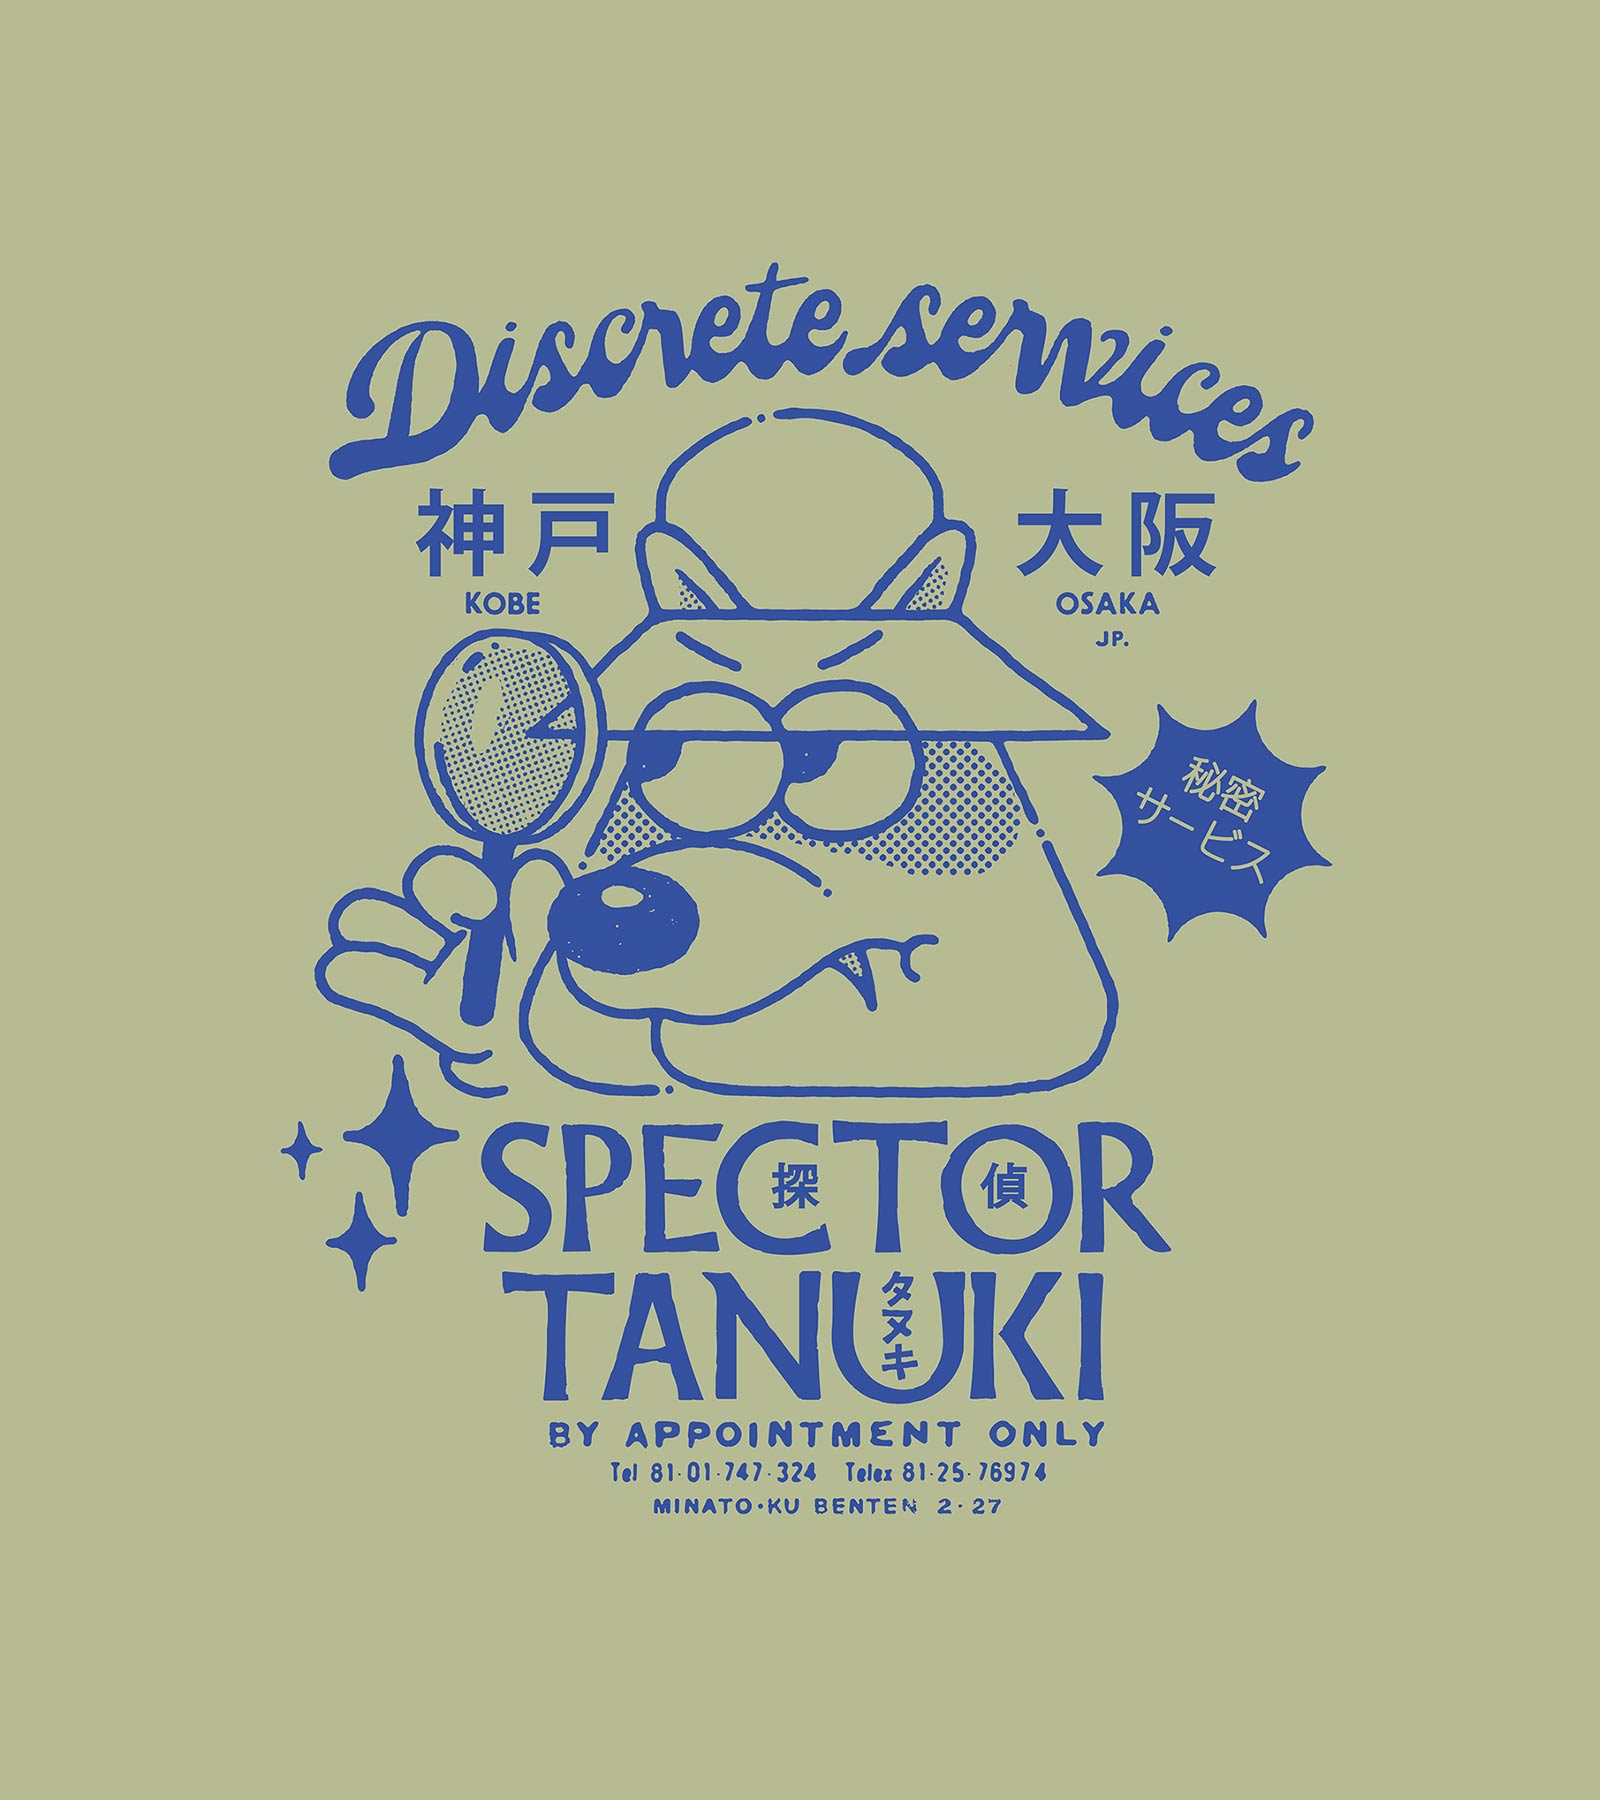 Discrete Services - 